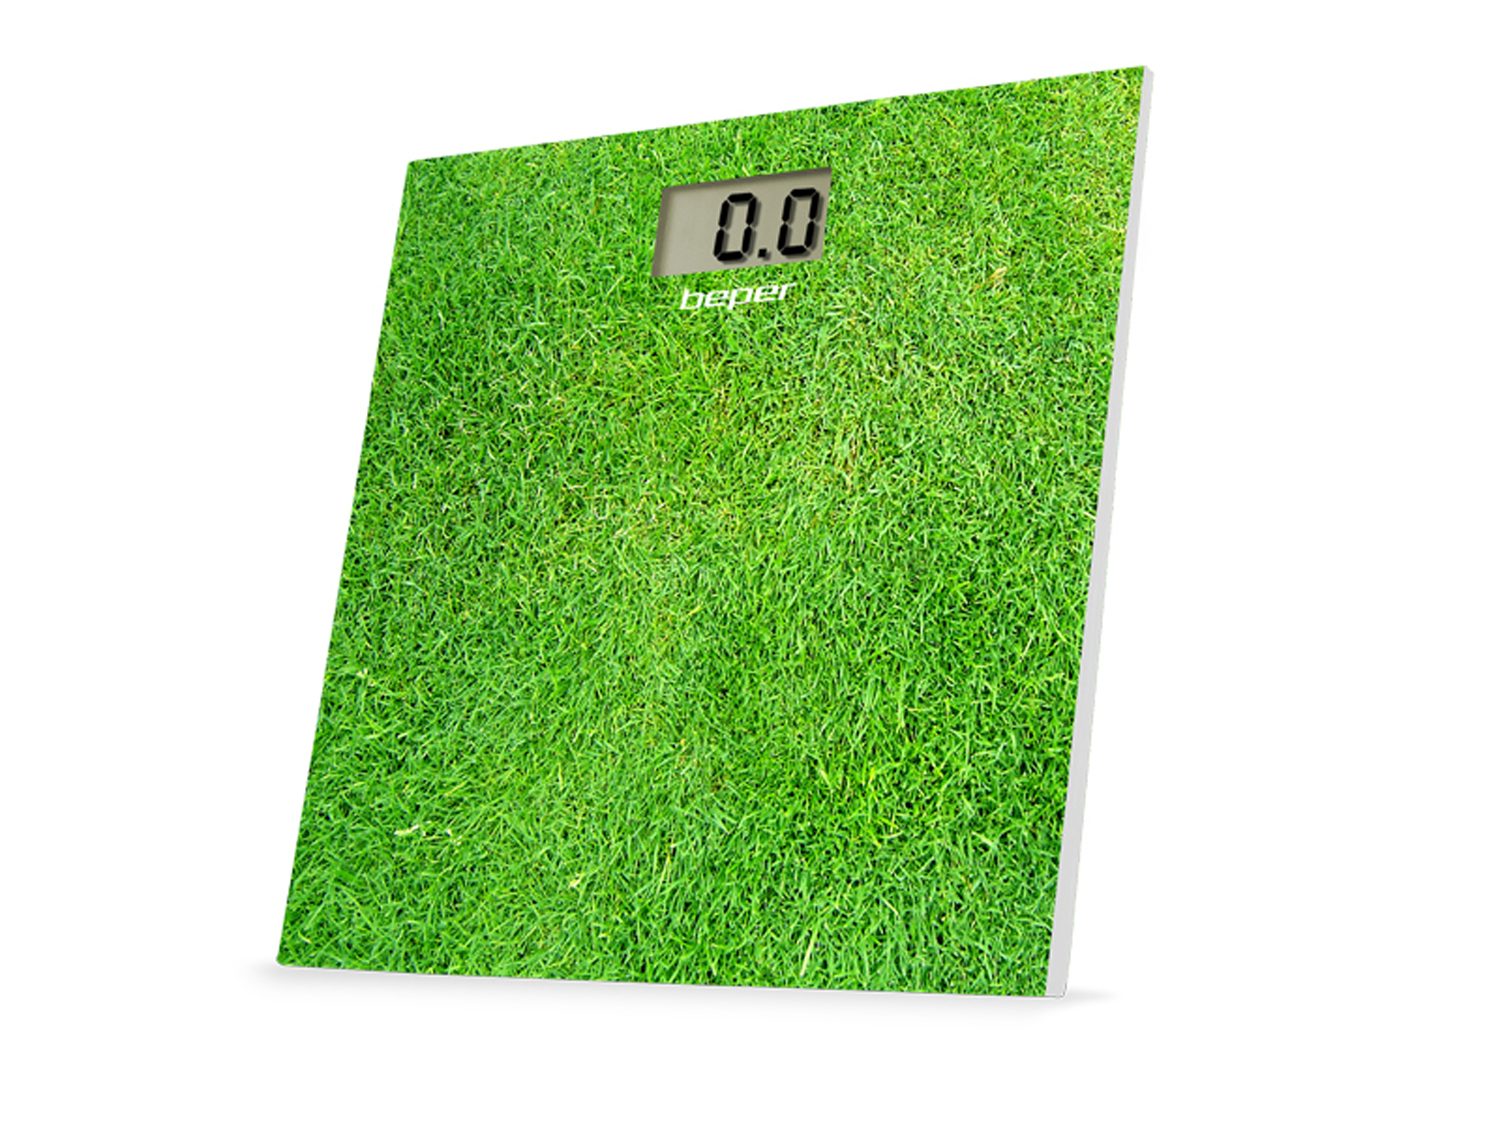 40.810F3, body scale, grass